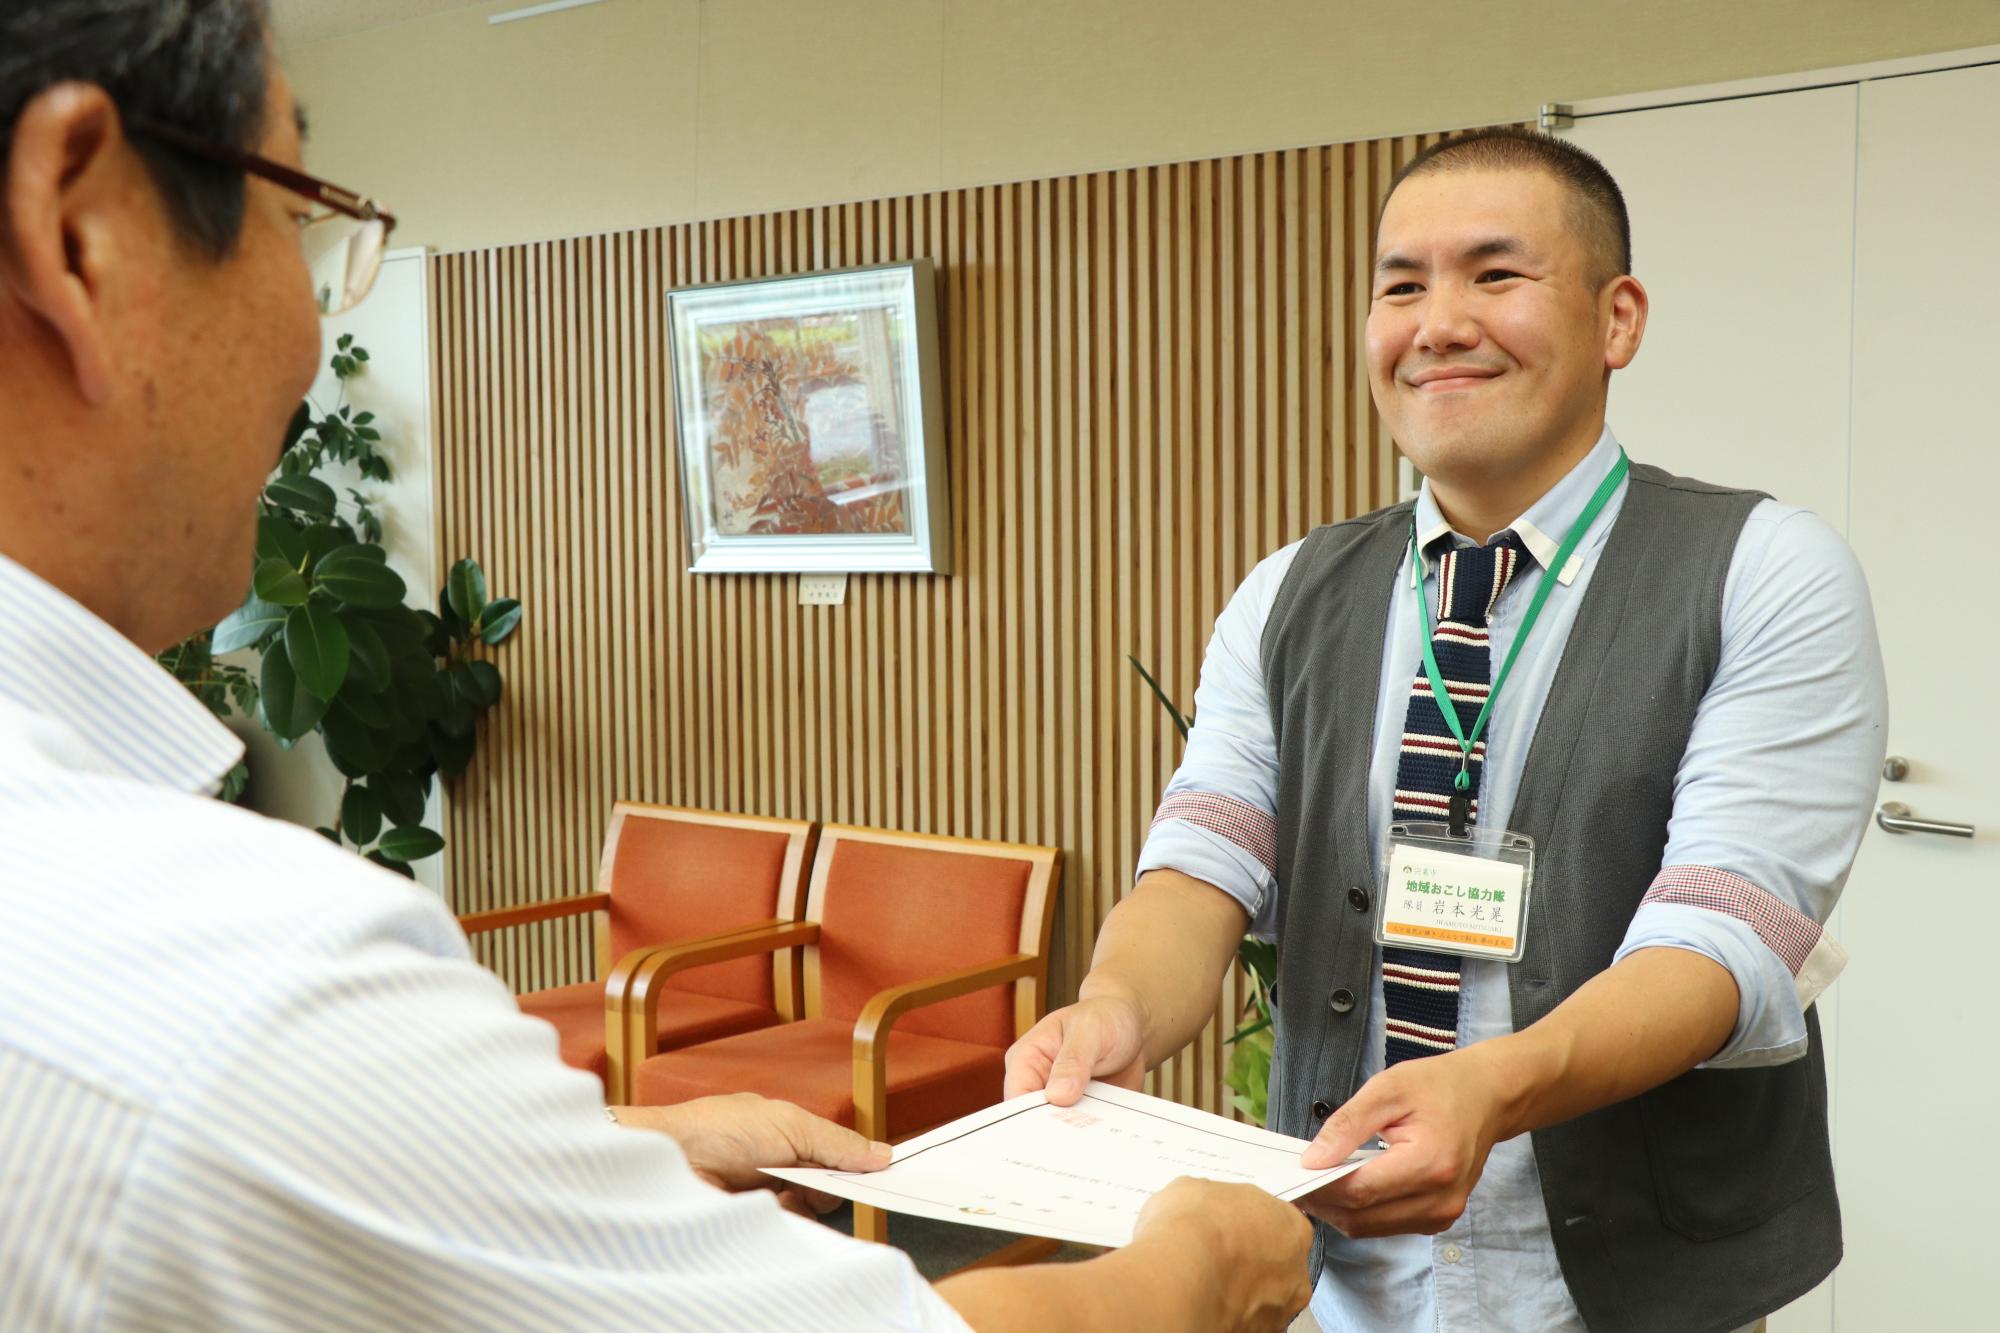 市長から解嘱状を受け取る岩本さんの写真